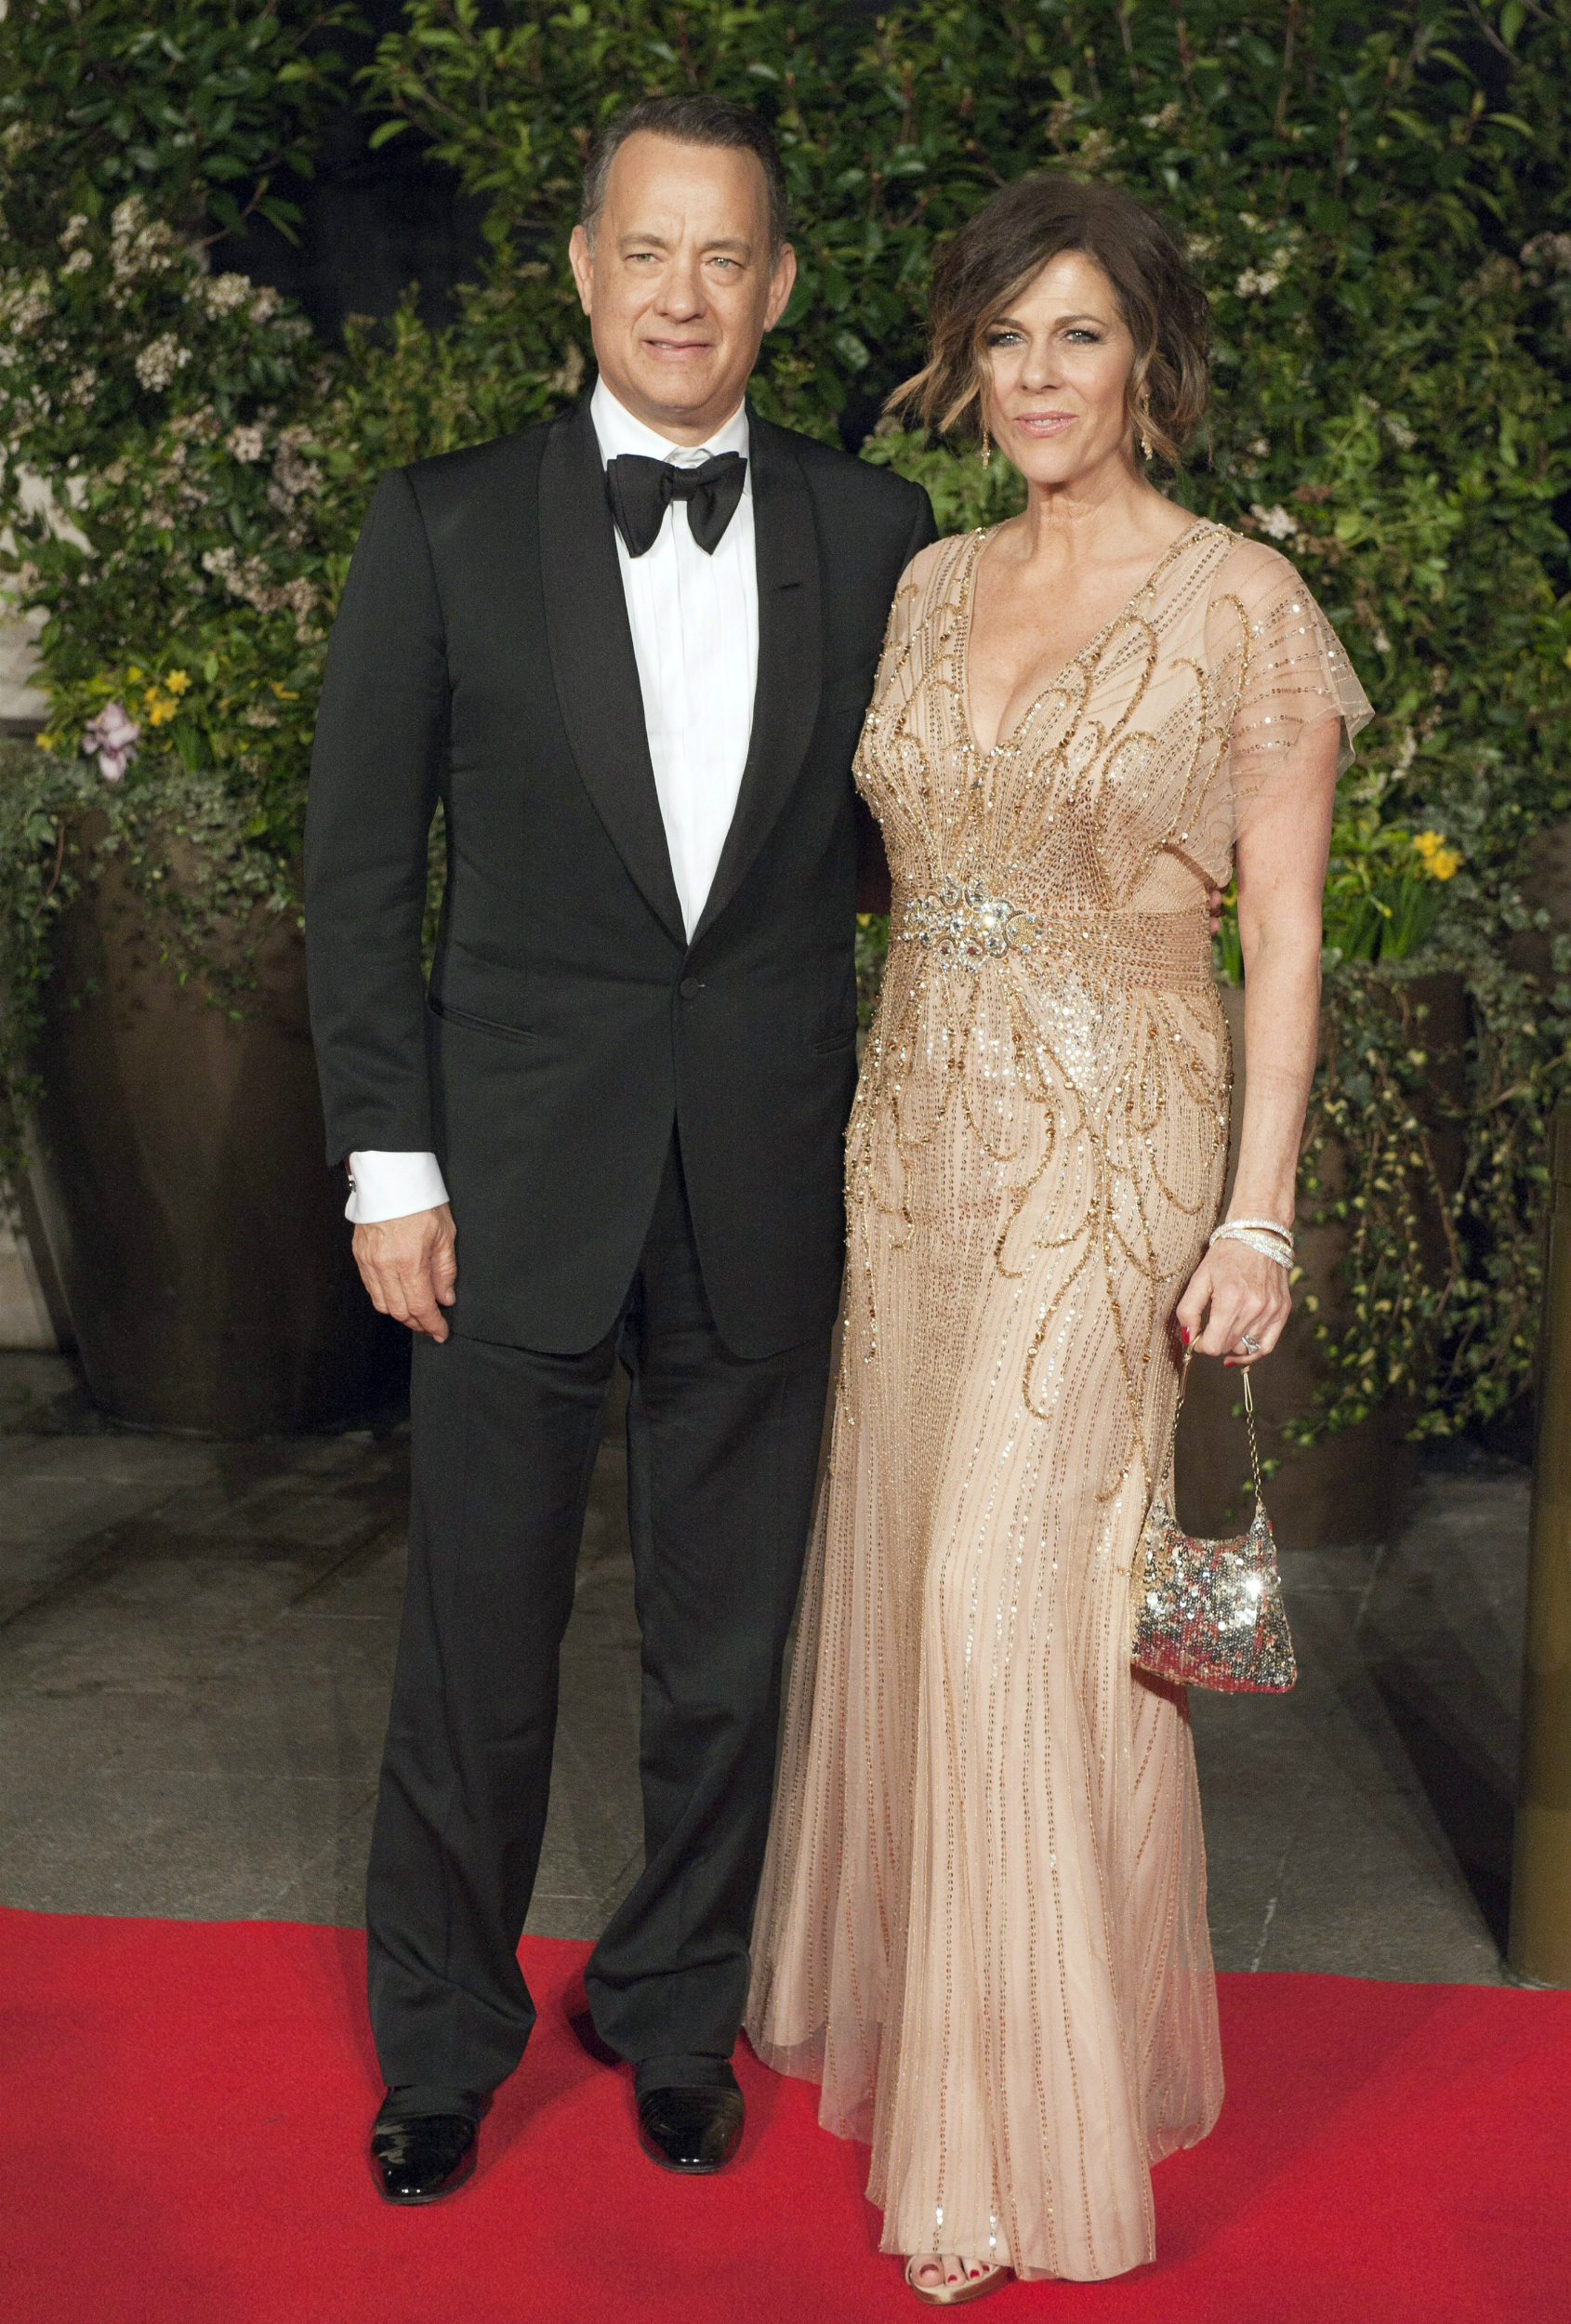 La actriz Rita Wilson, esposa de Tom Hanks, ha superado un cáncer de mama. EFE/EPA/WILL OLIVER